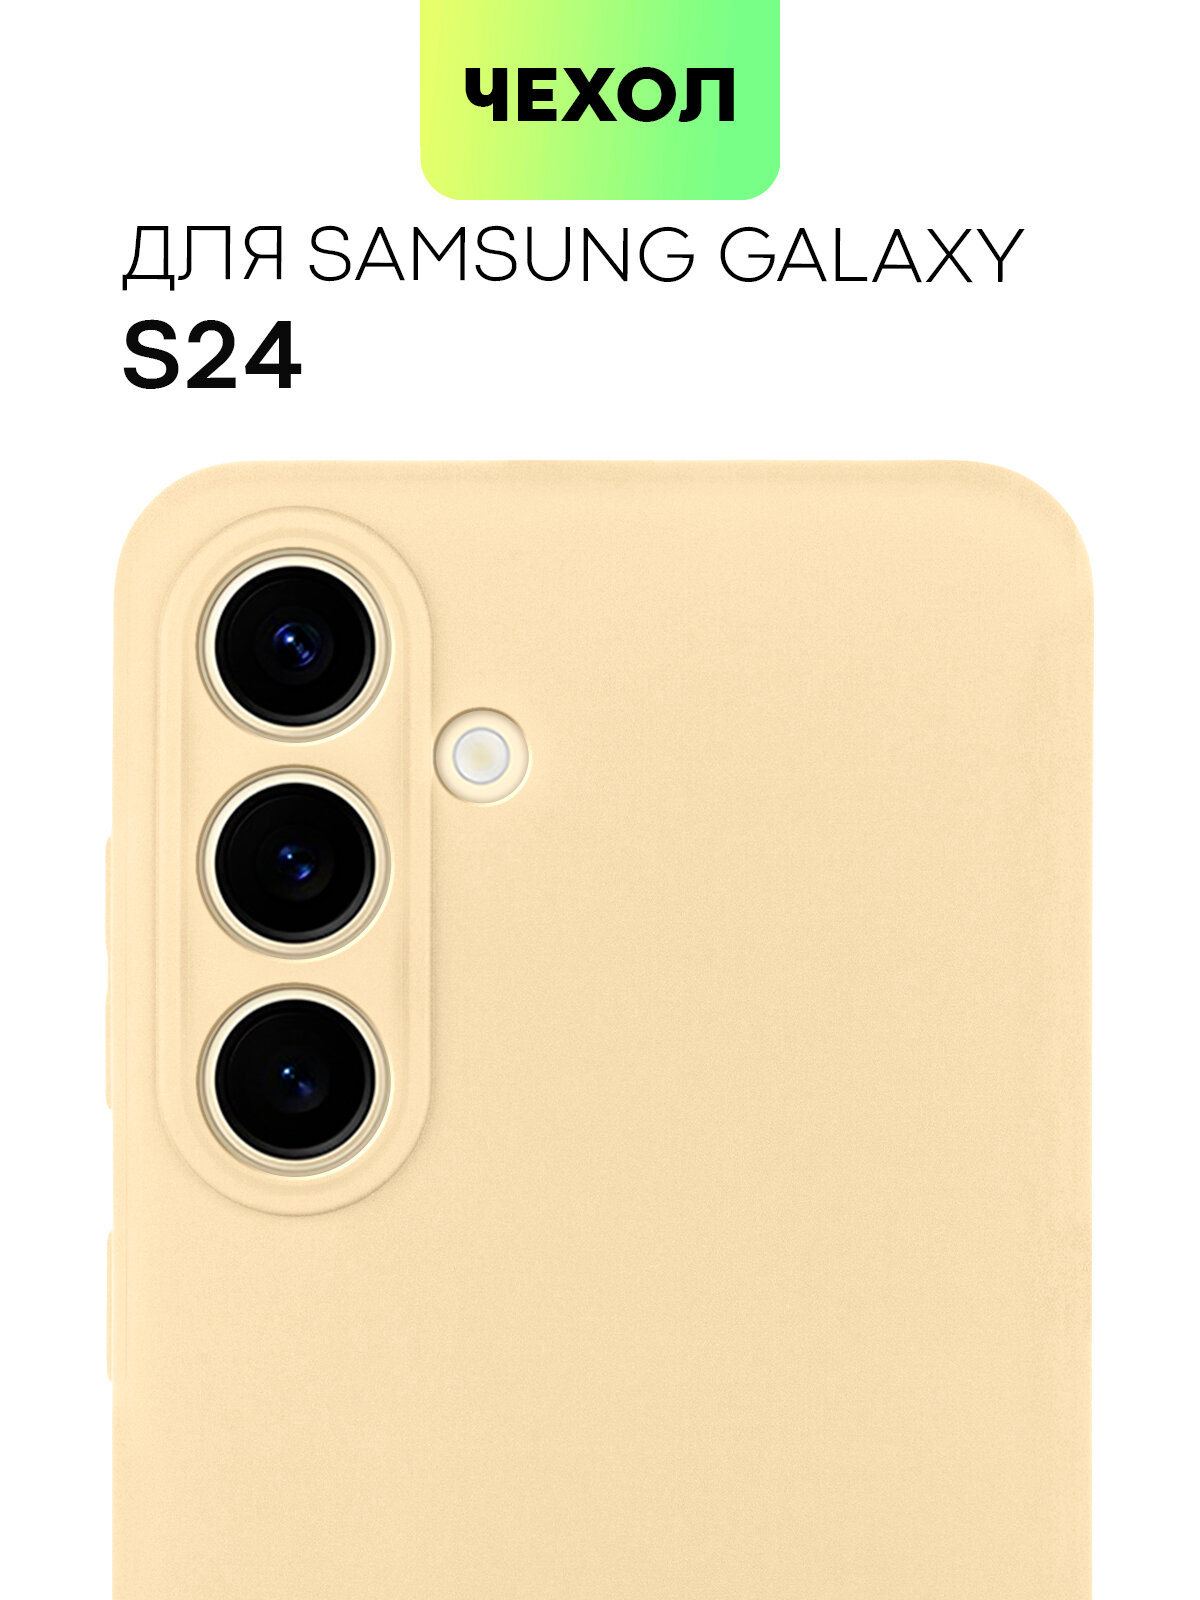 Чехол BROSCORP для Samsung Galaxy S24 (Самсунг Галакси С24), тонкий, силиконовый чехол, матовое покрытие, защита модуля камер, песочный